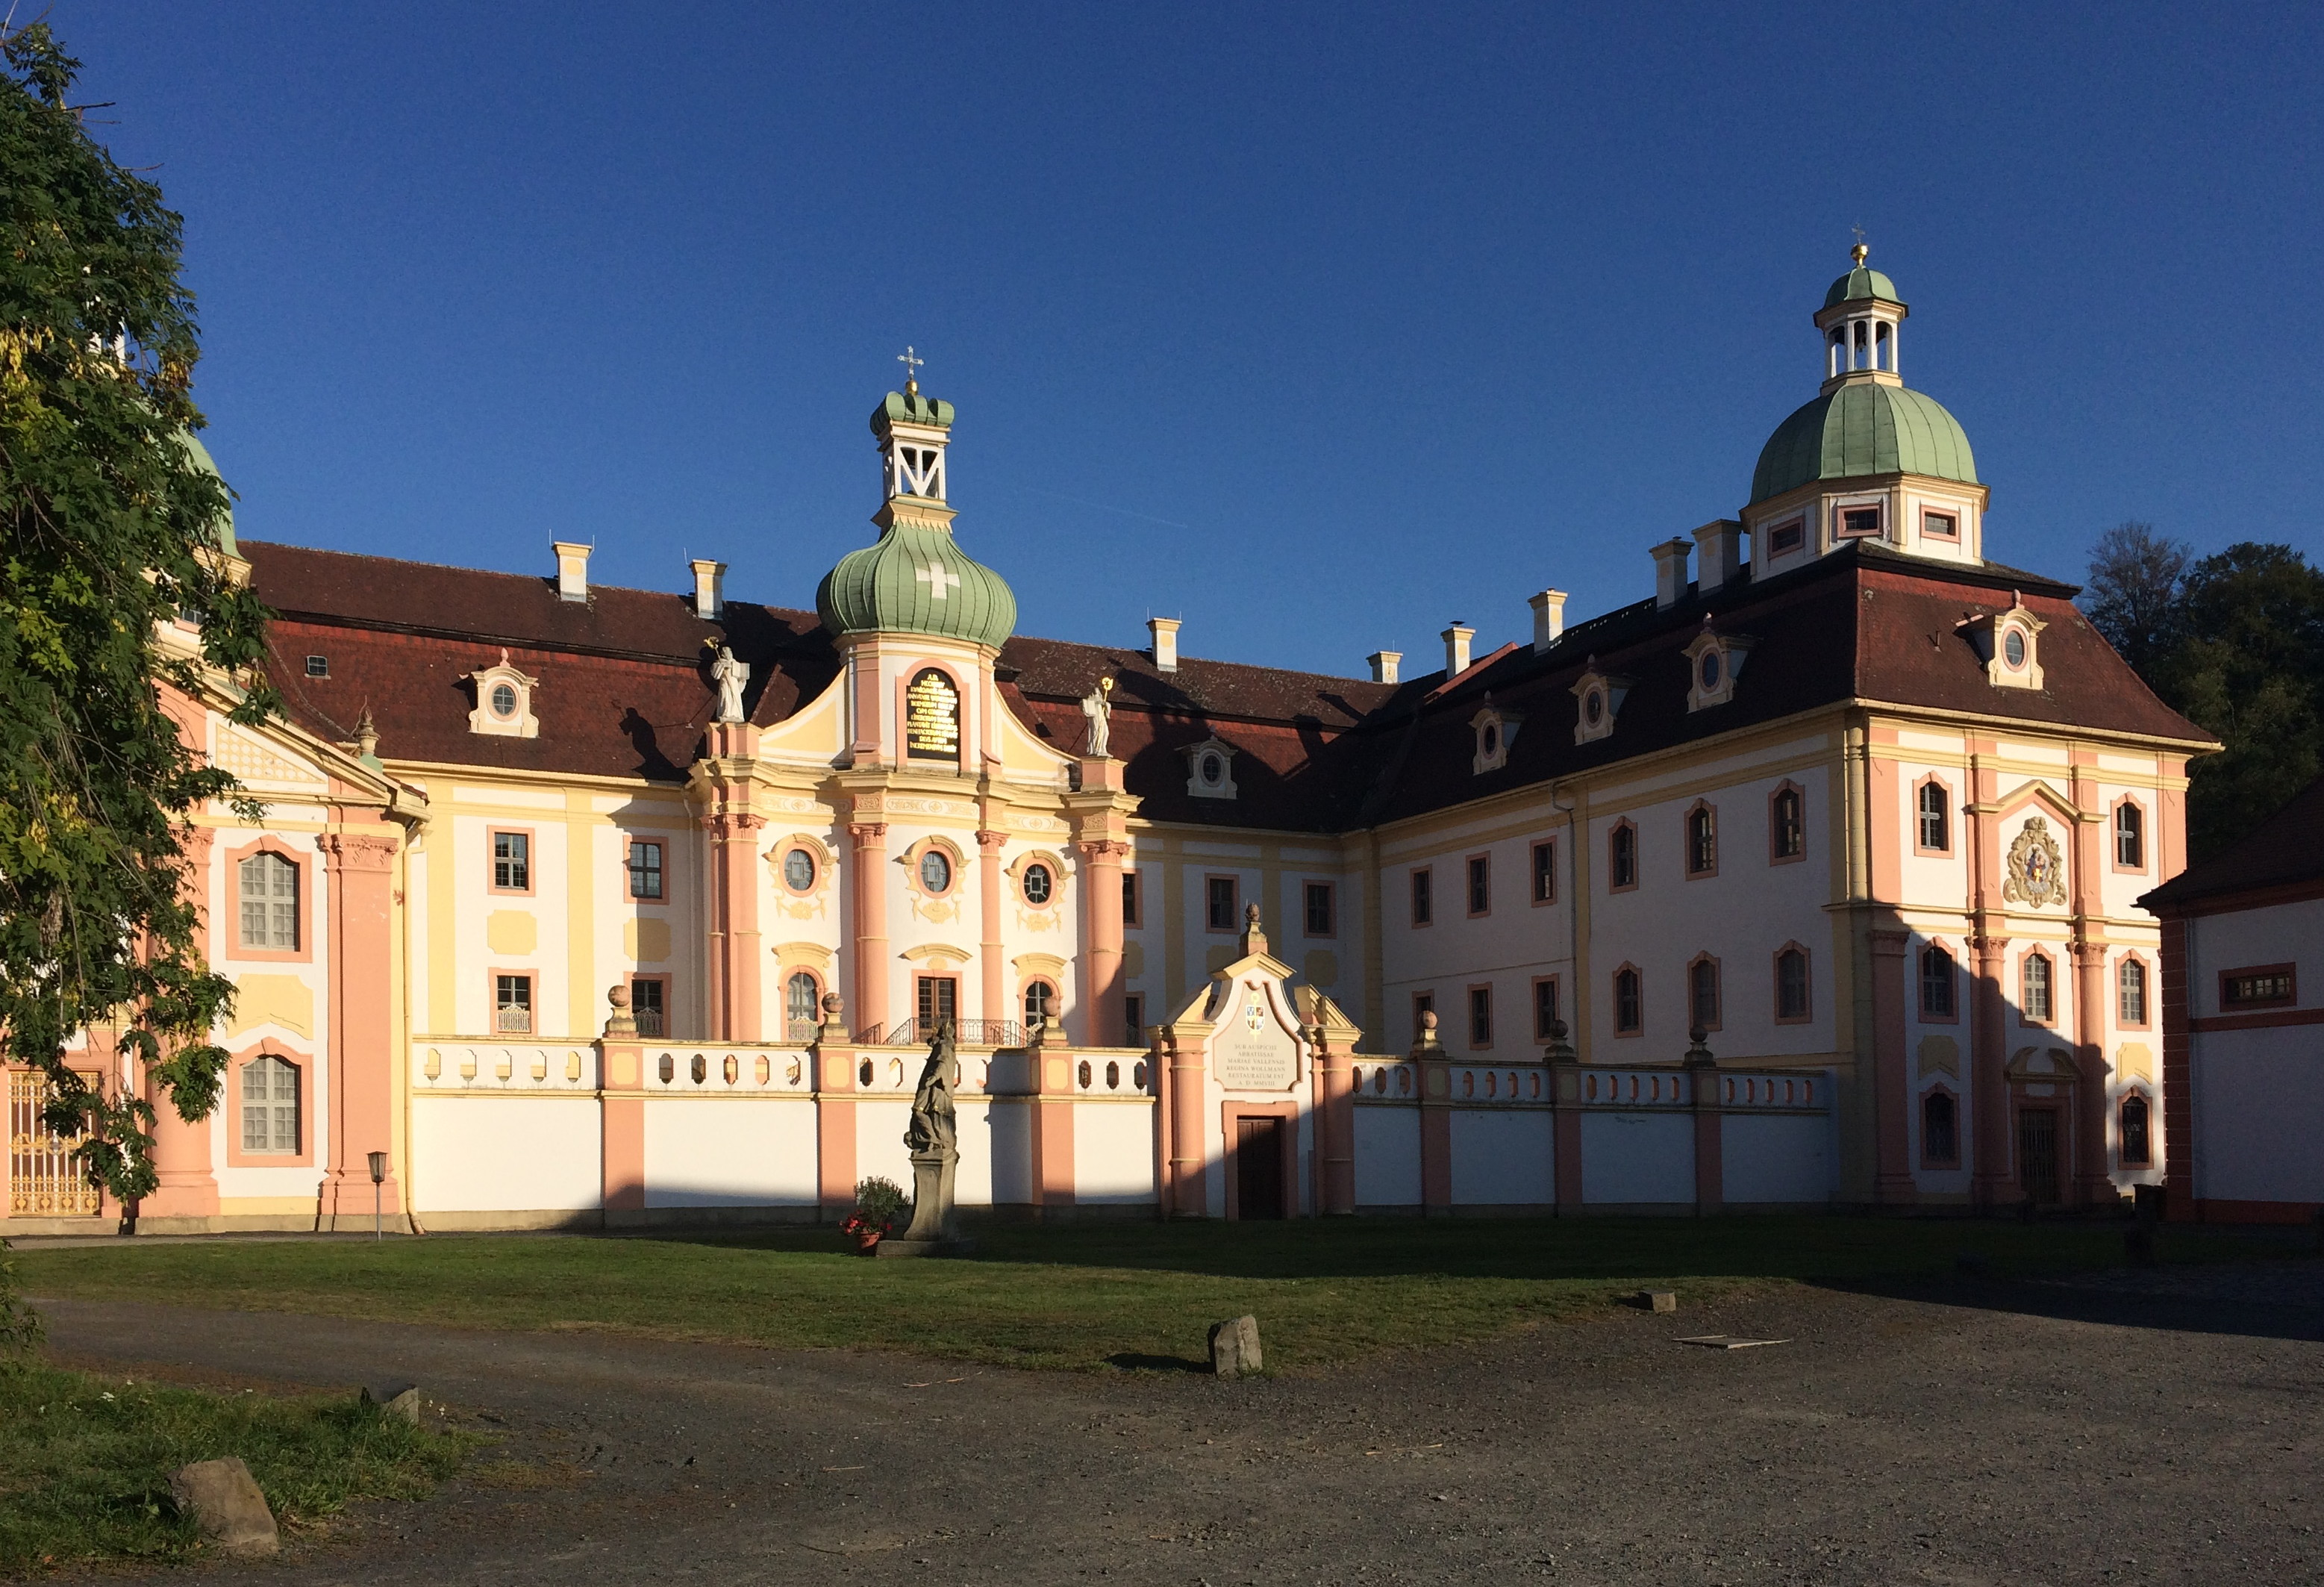 Chorreise nach Görlitz mit Aufenthalt im Kloster Marienthal am 14. September 2019